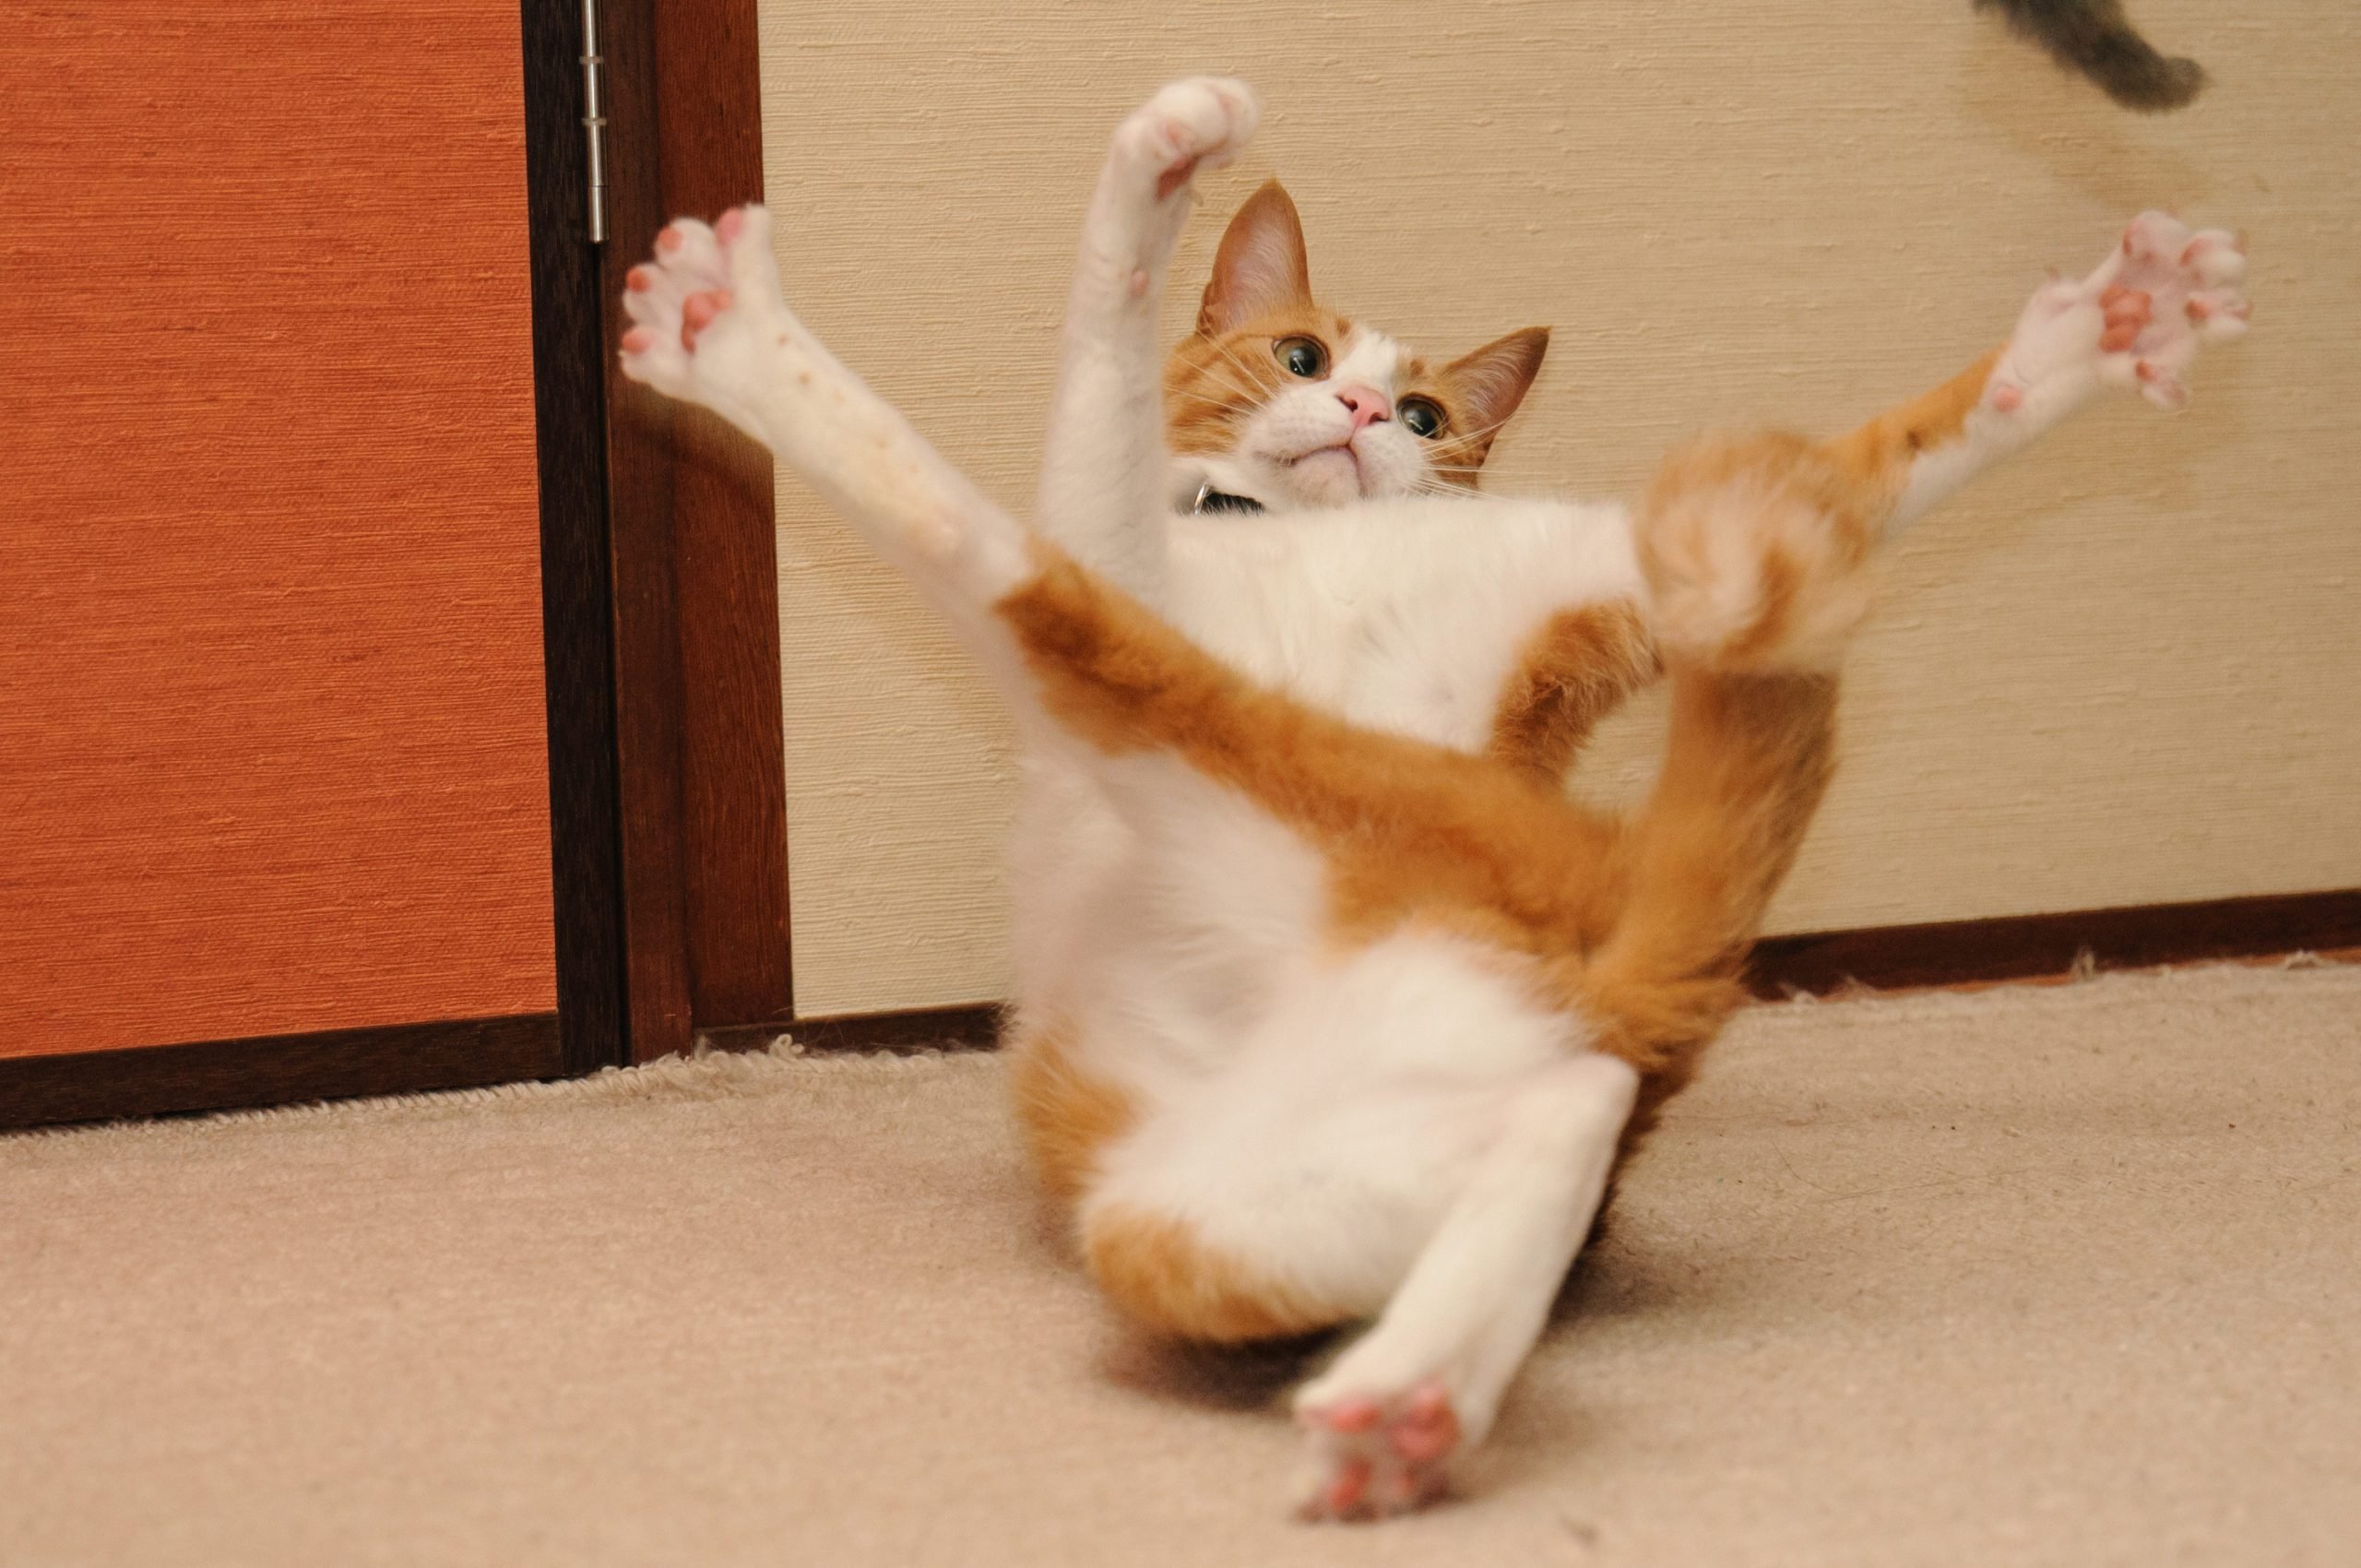 Cat flailing limbs